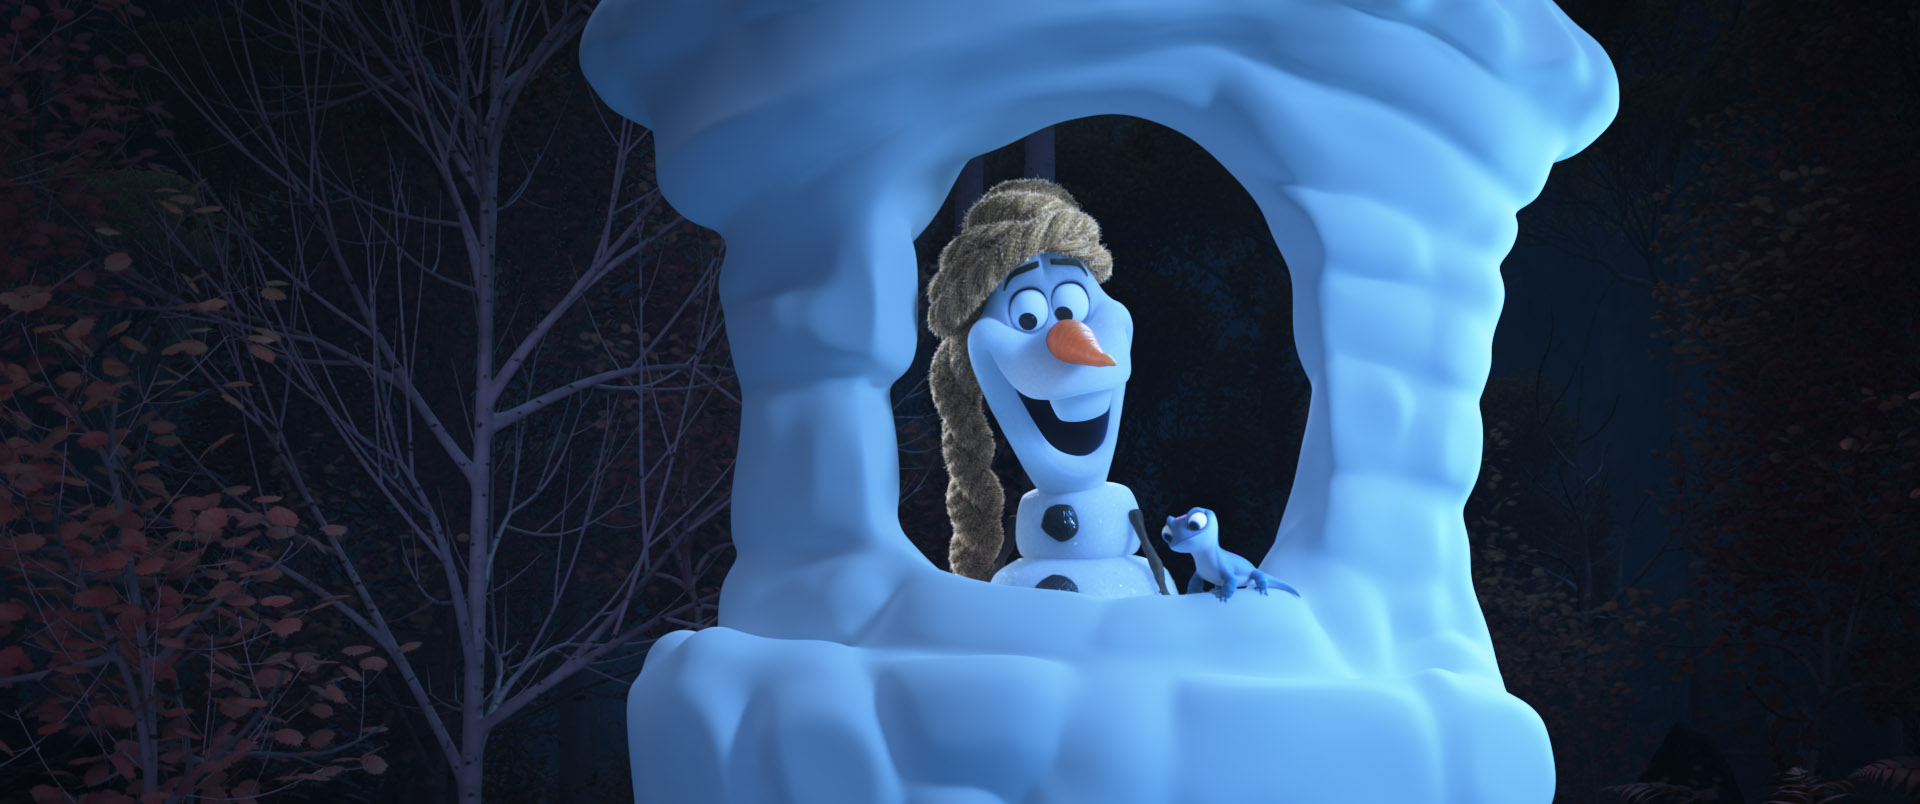 I racconti di Olaf